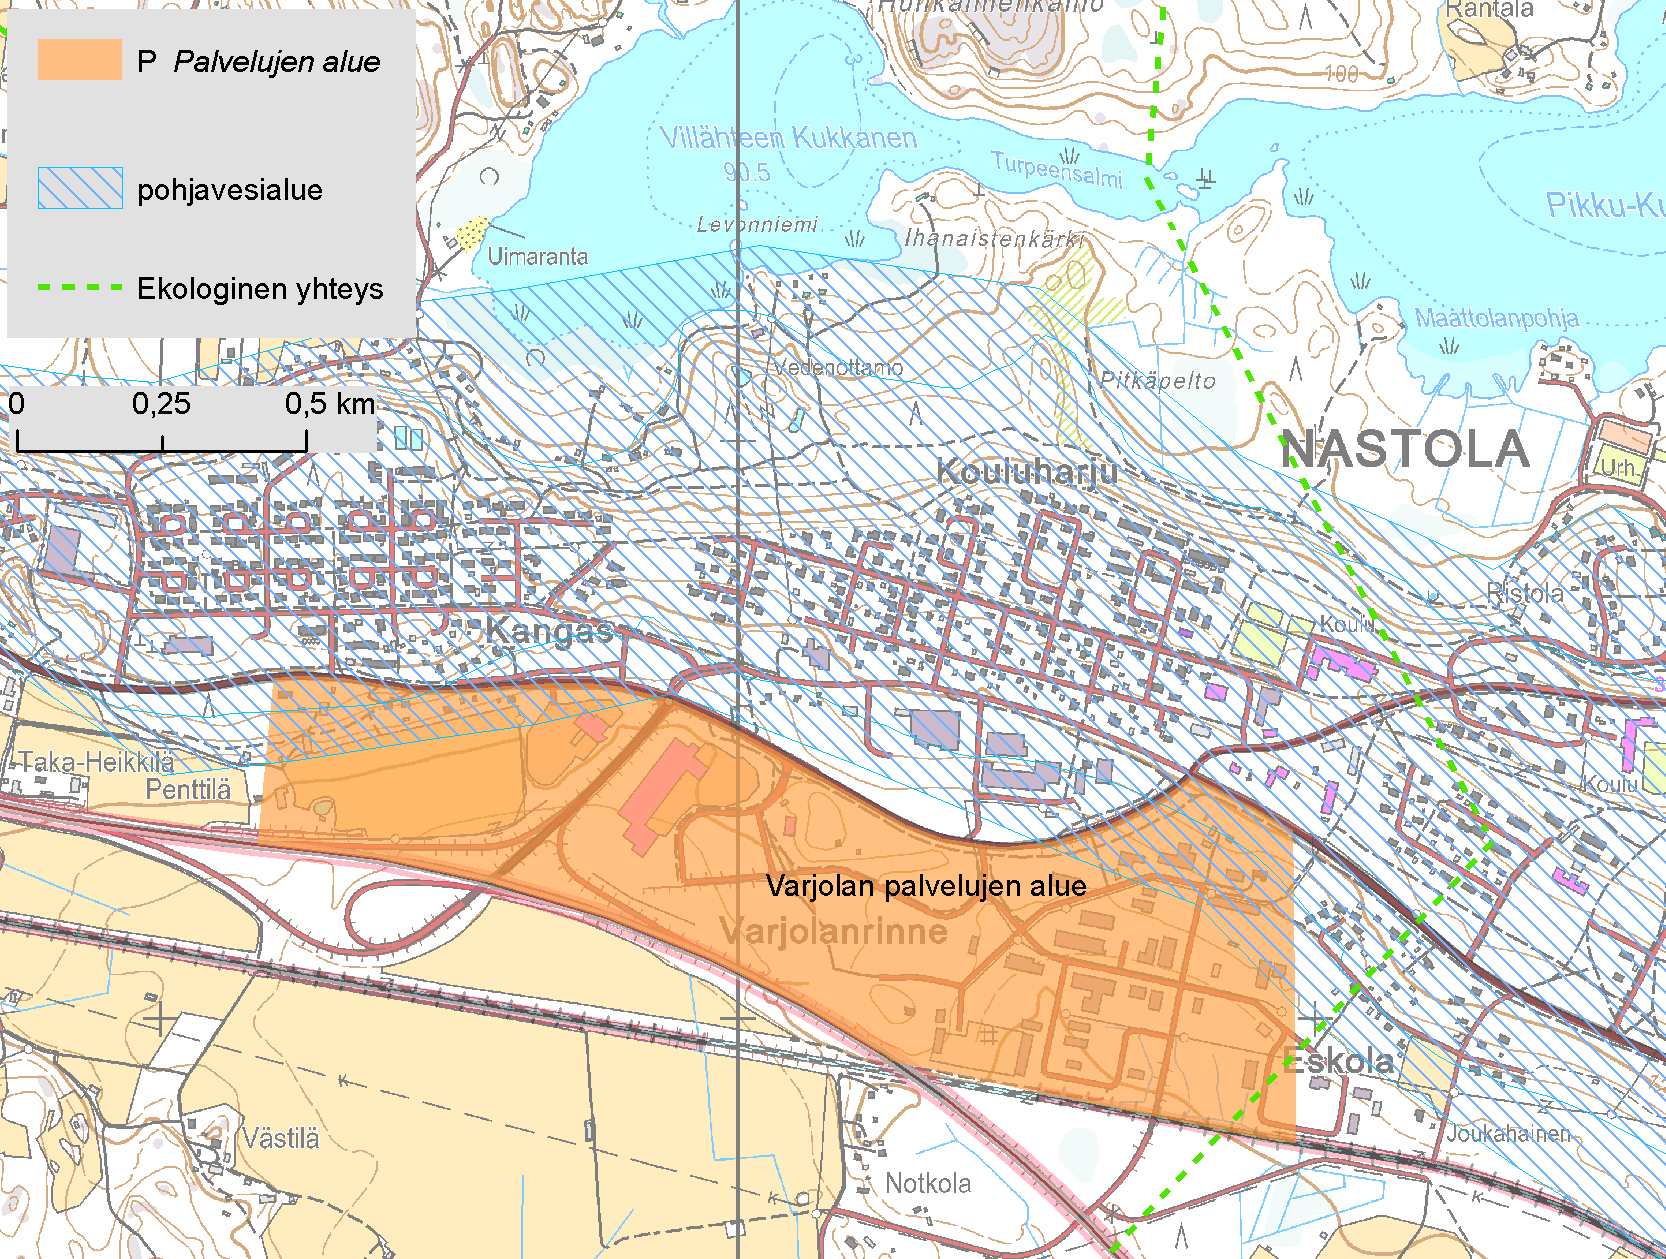 2.18. Varjolan palvelujen alue, Nastola Varjolan palvelujen alueen nykyisen aluevarauksen pohjoisosat sijaitsevat Nastonharju Uusikylän vedenhankintaa varten tärkeällä pohjavesialueella (Kuva 15).